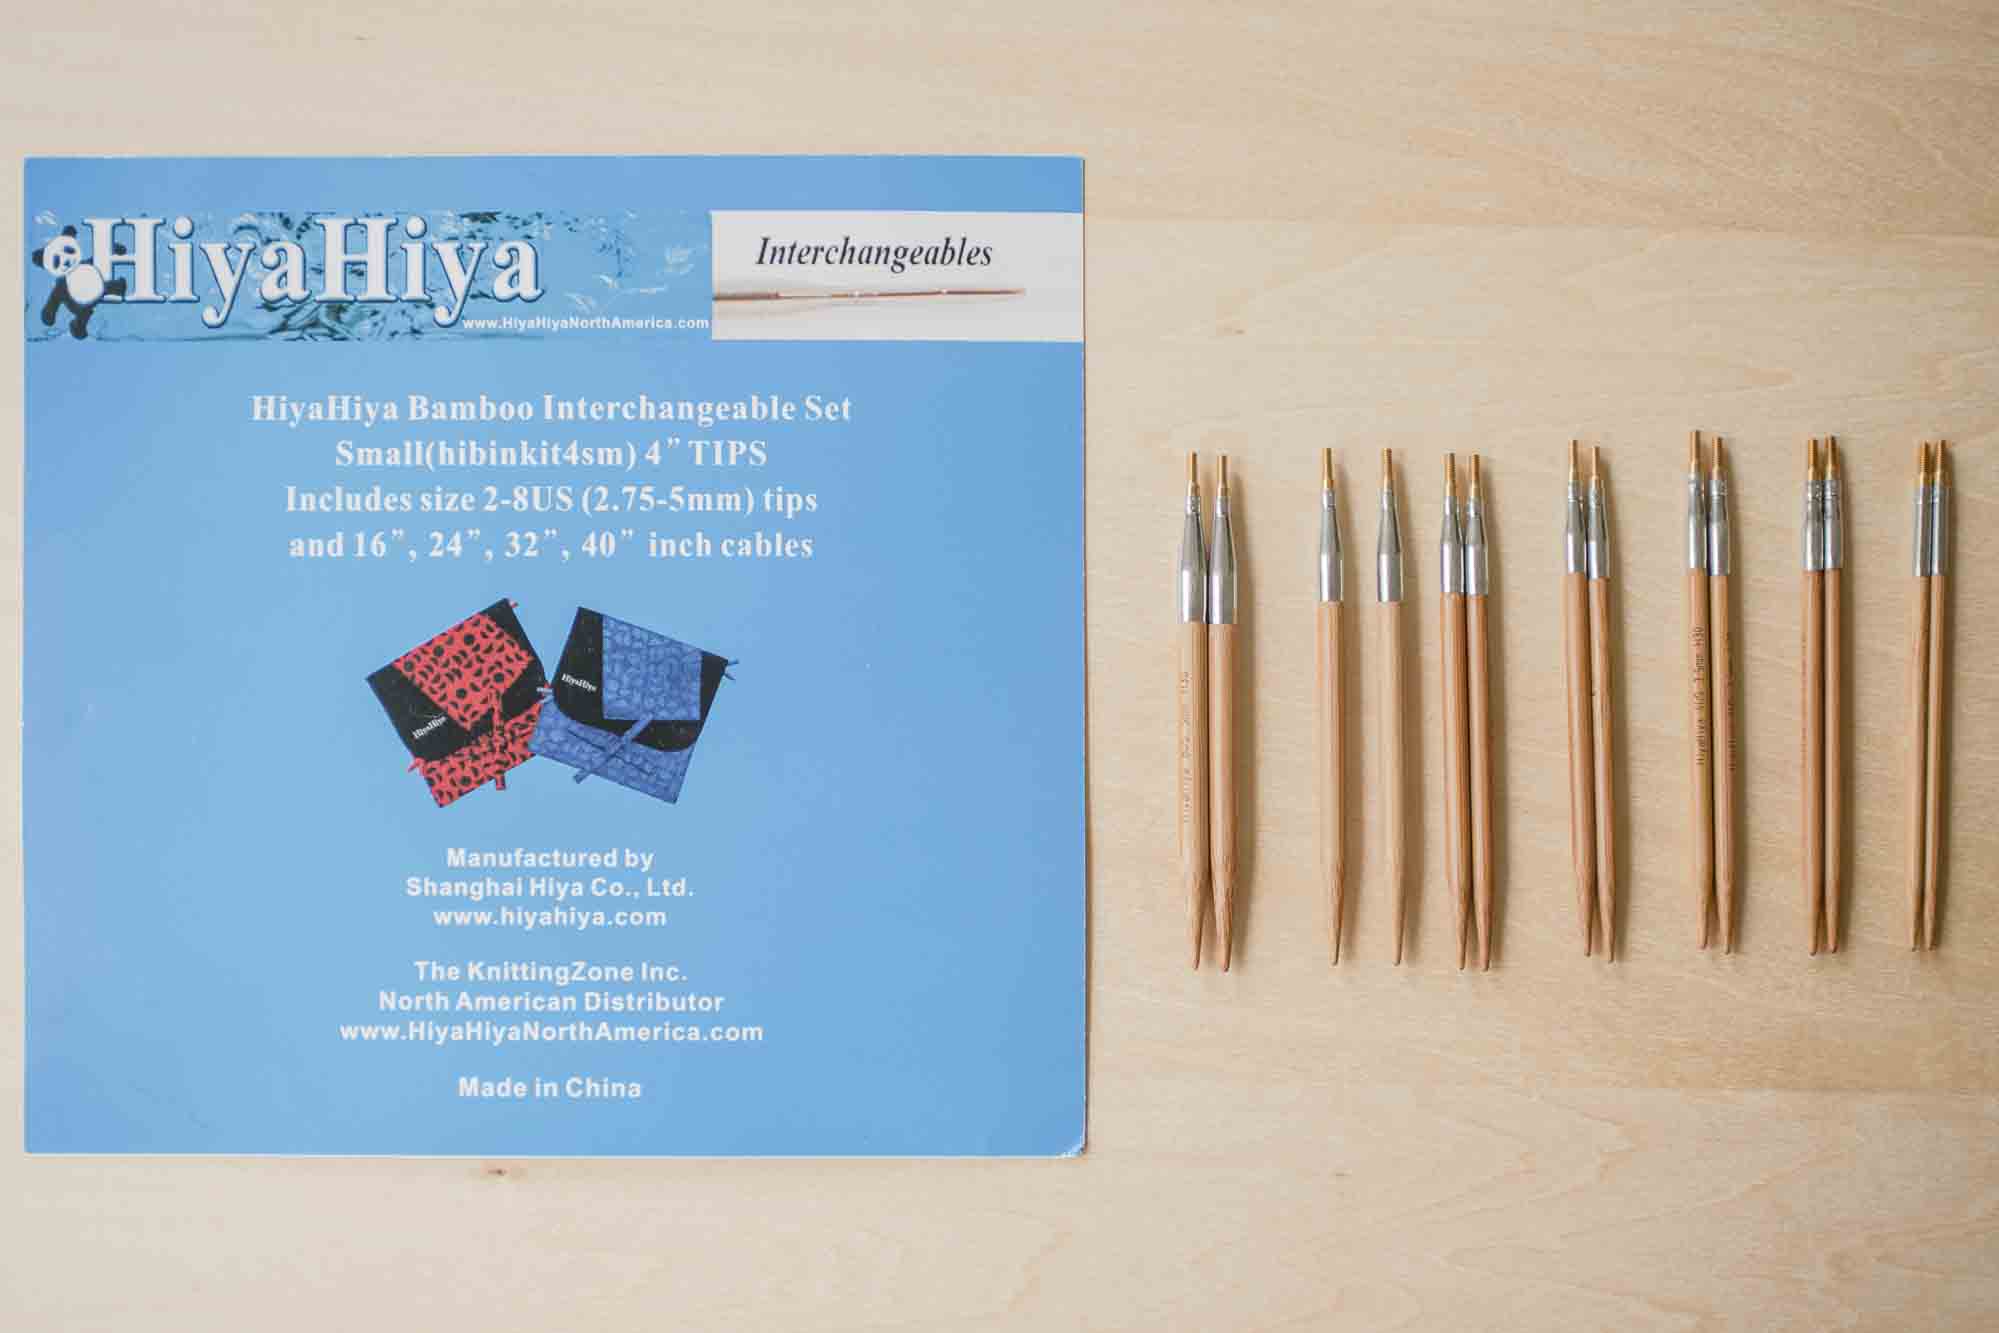 HiyaHiya Bamboo Interchangeable Needle Set